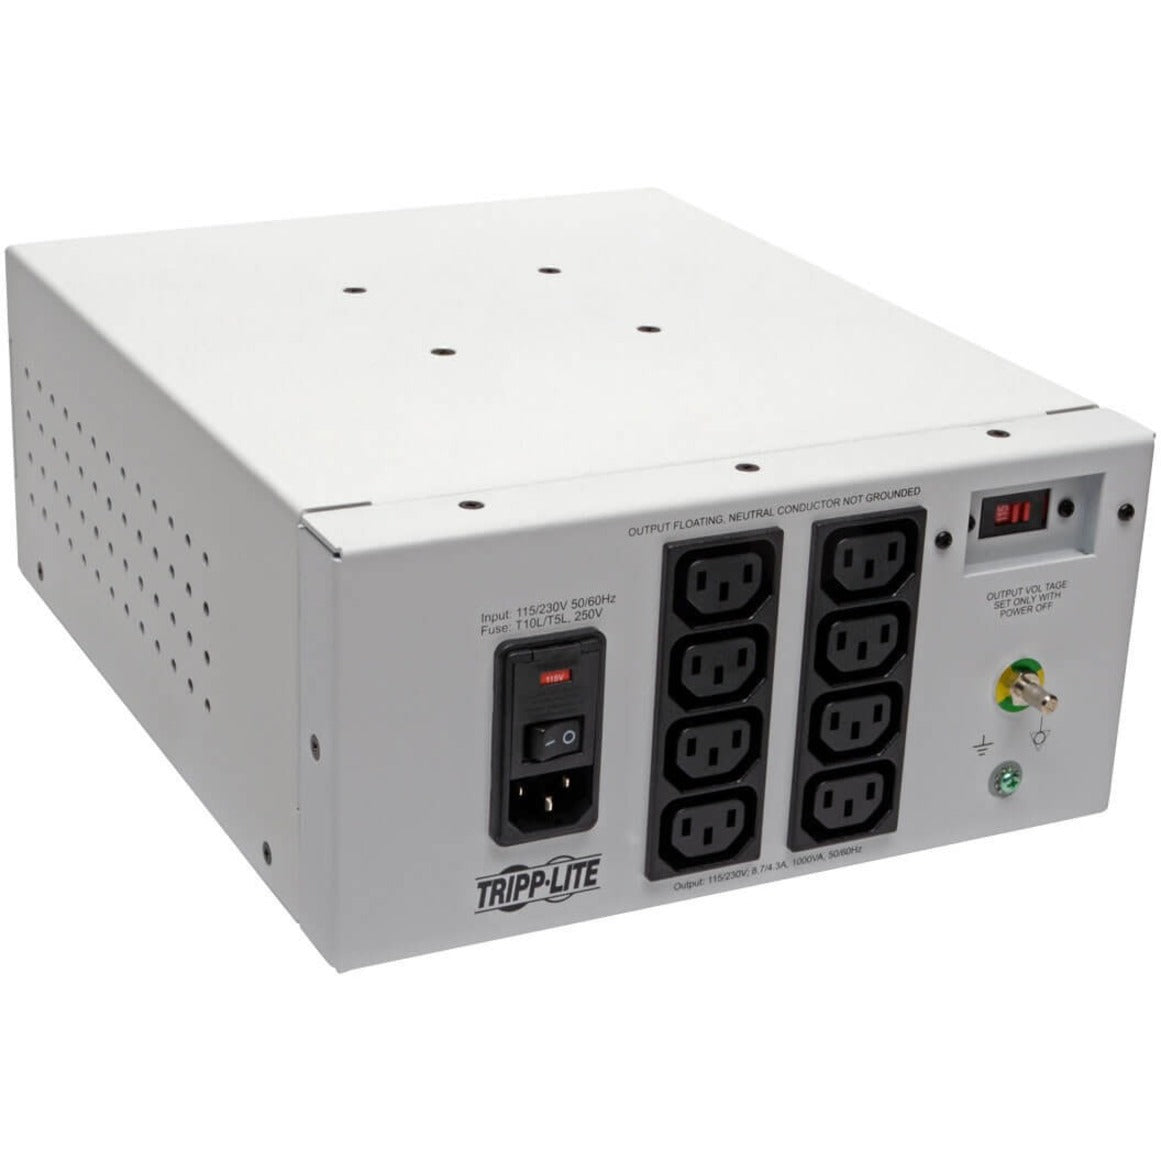 Tripp Lite Isolator IS1000HGDV Isolation Transformer, Dual-Voltage 115/230V 1000W, Medical-Grade Isolation Transformer